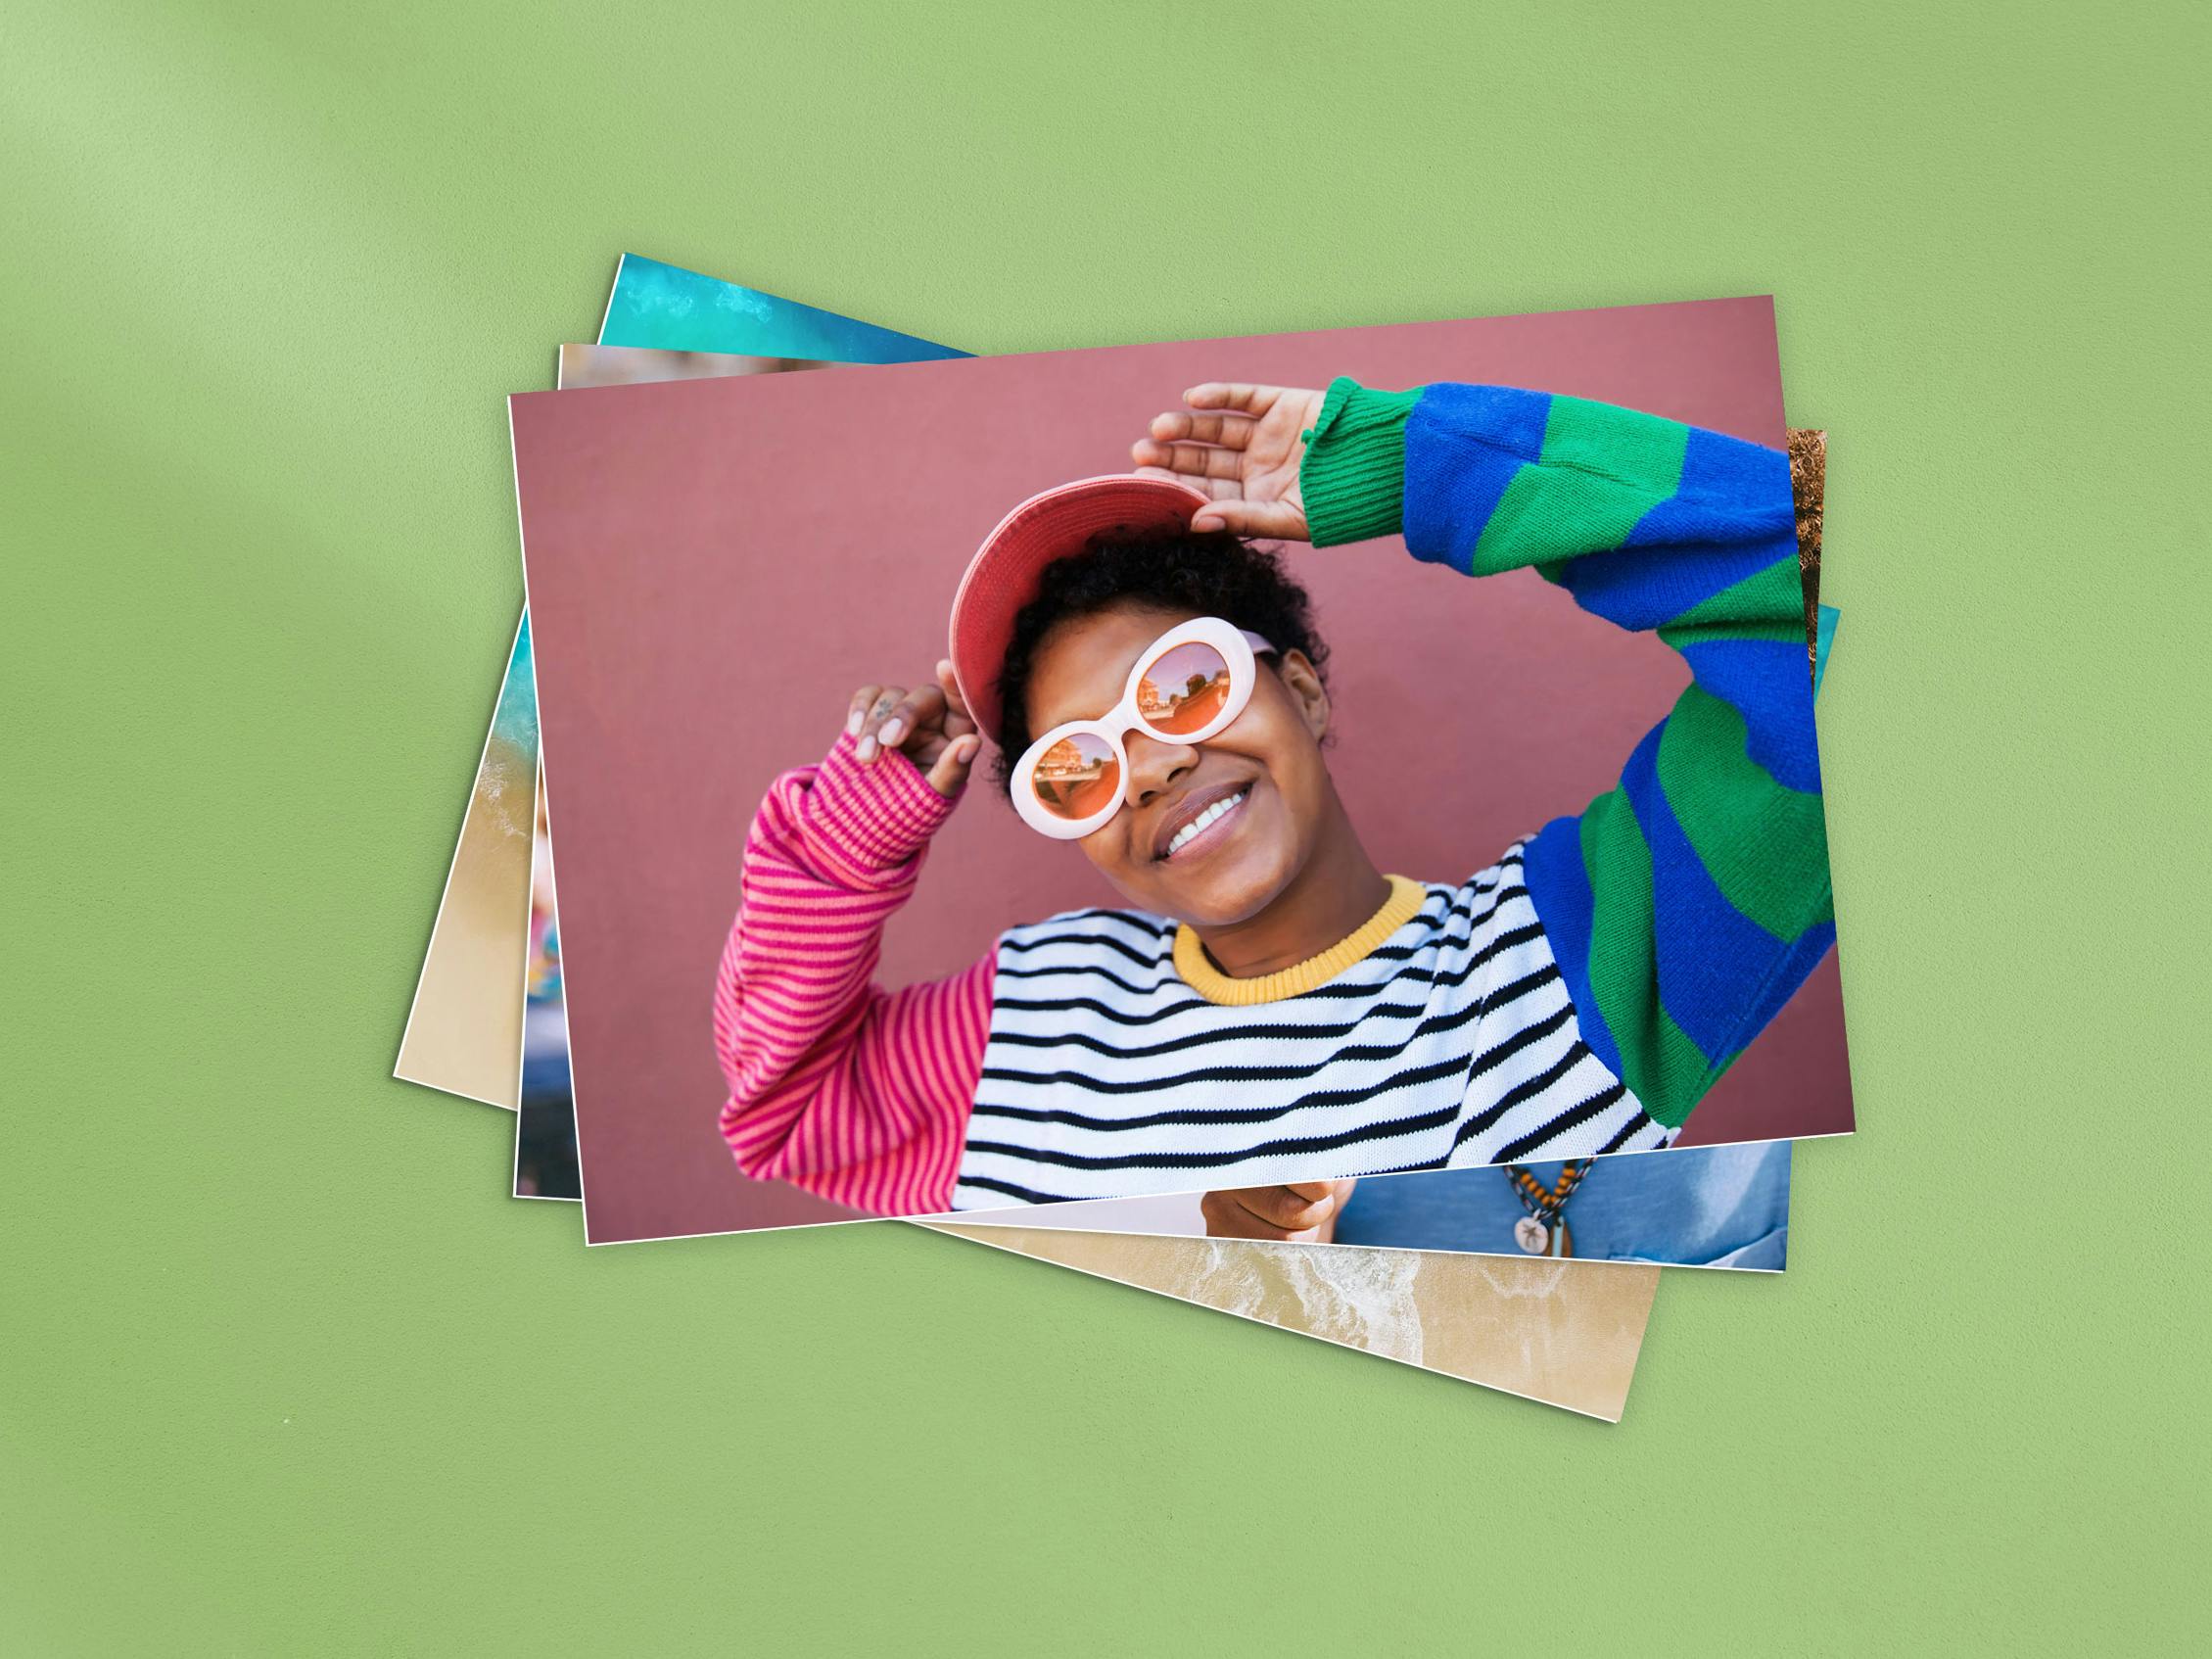 Revelados de fotos 20×30 cm en un fondo verde con una chica que sonríe